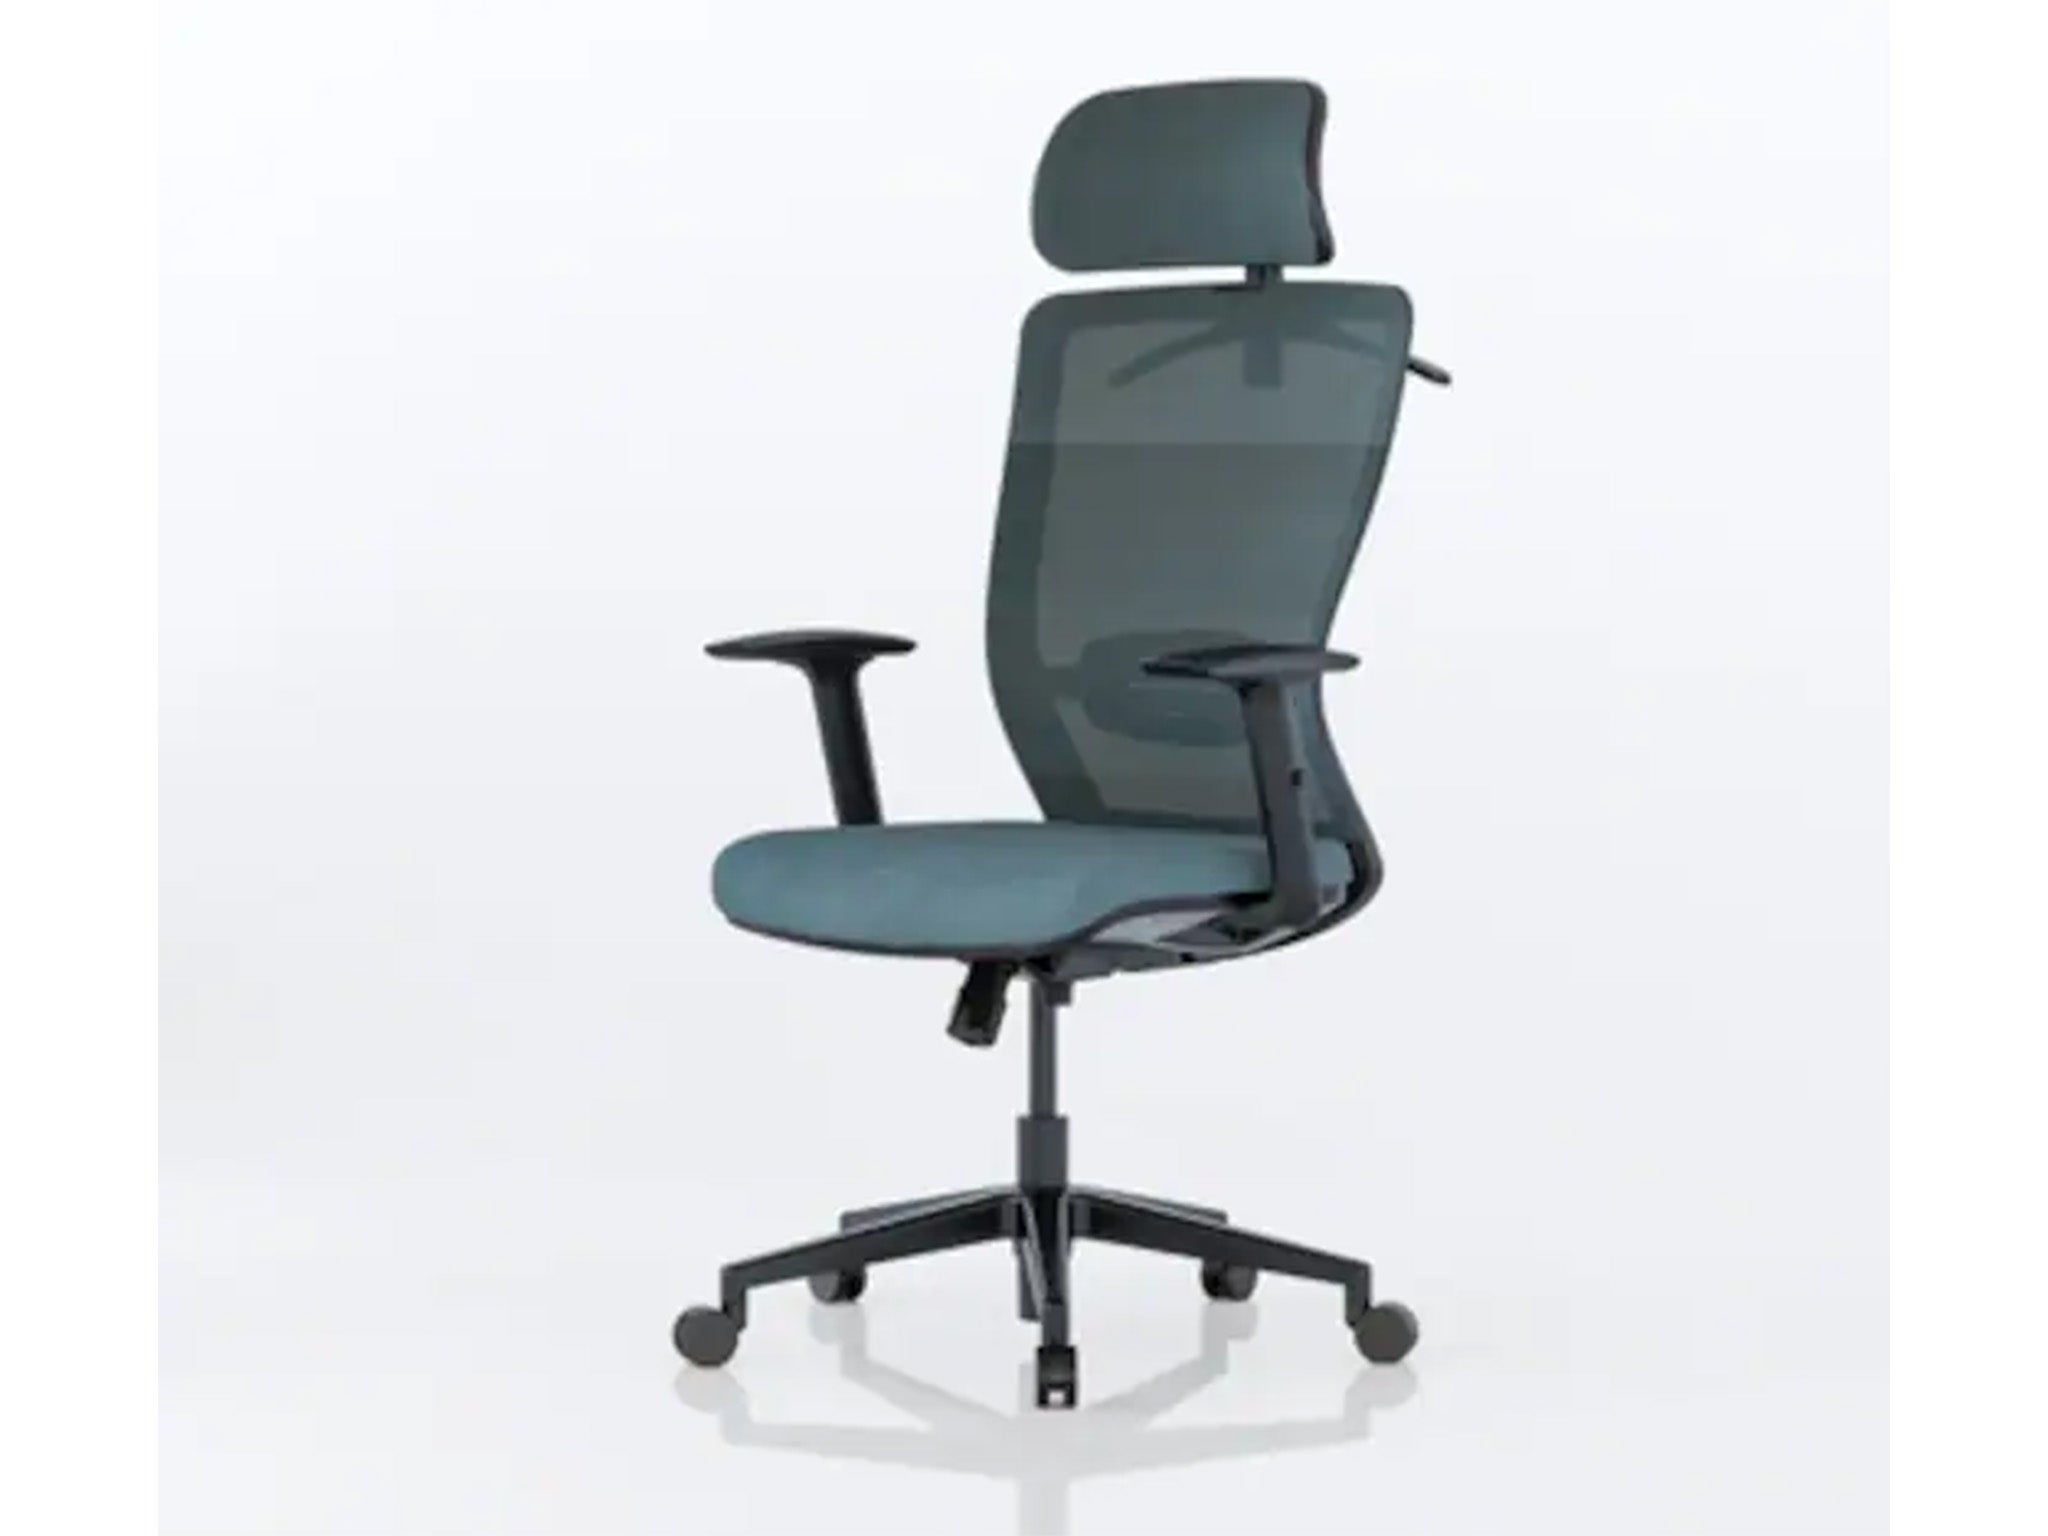 Flexispot BS3 ergonomic office chair